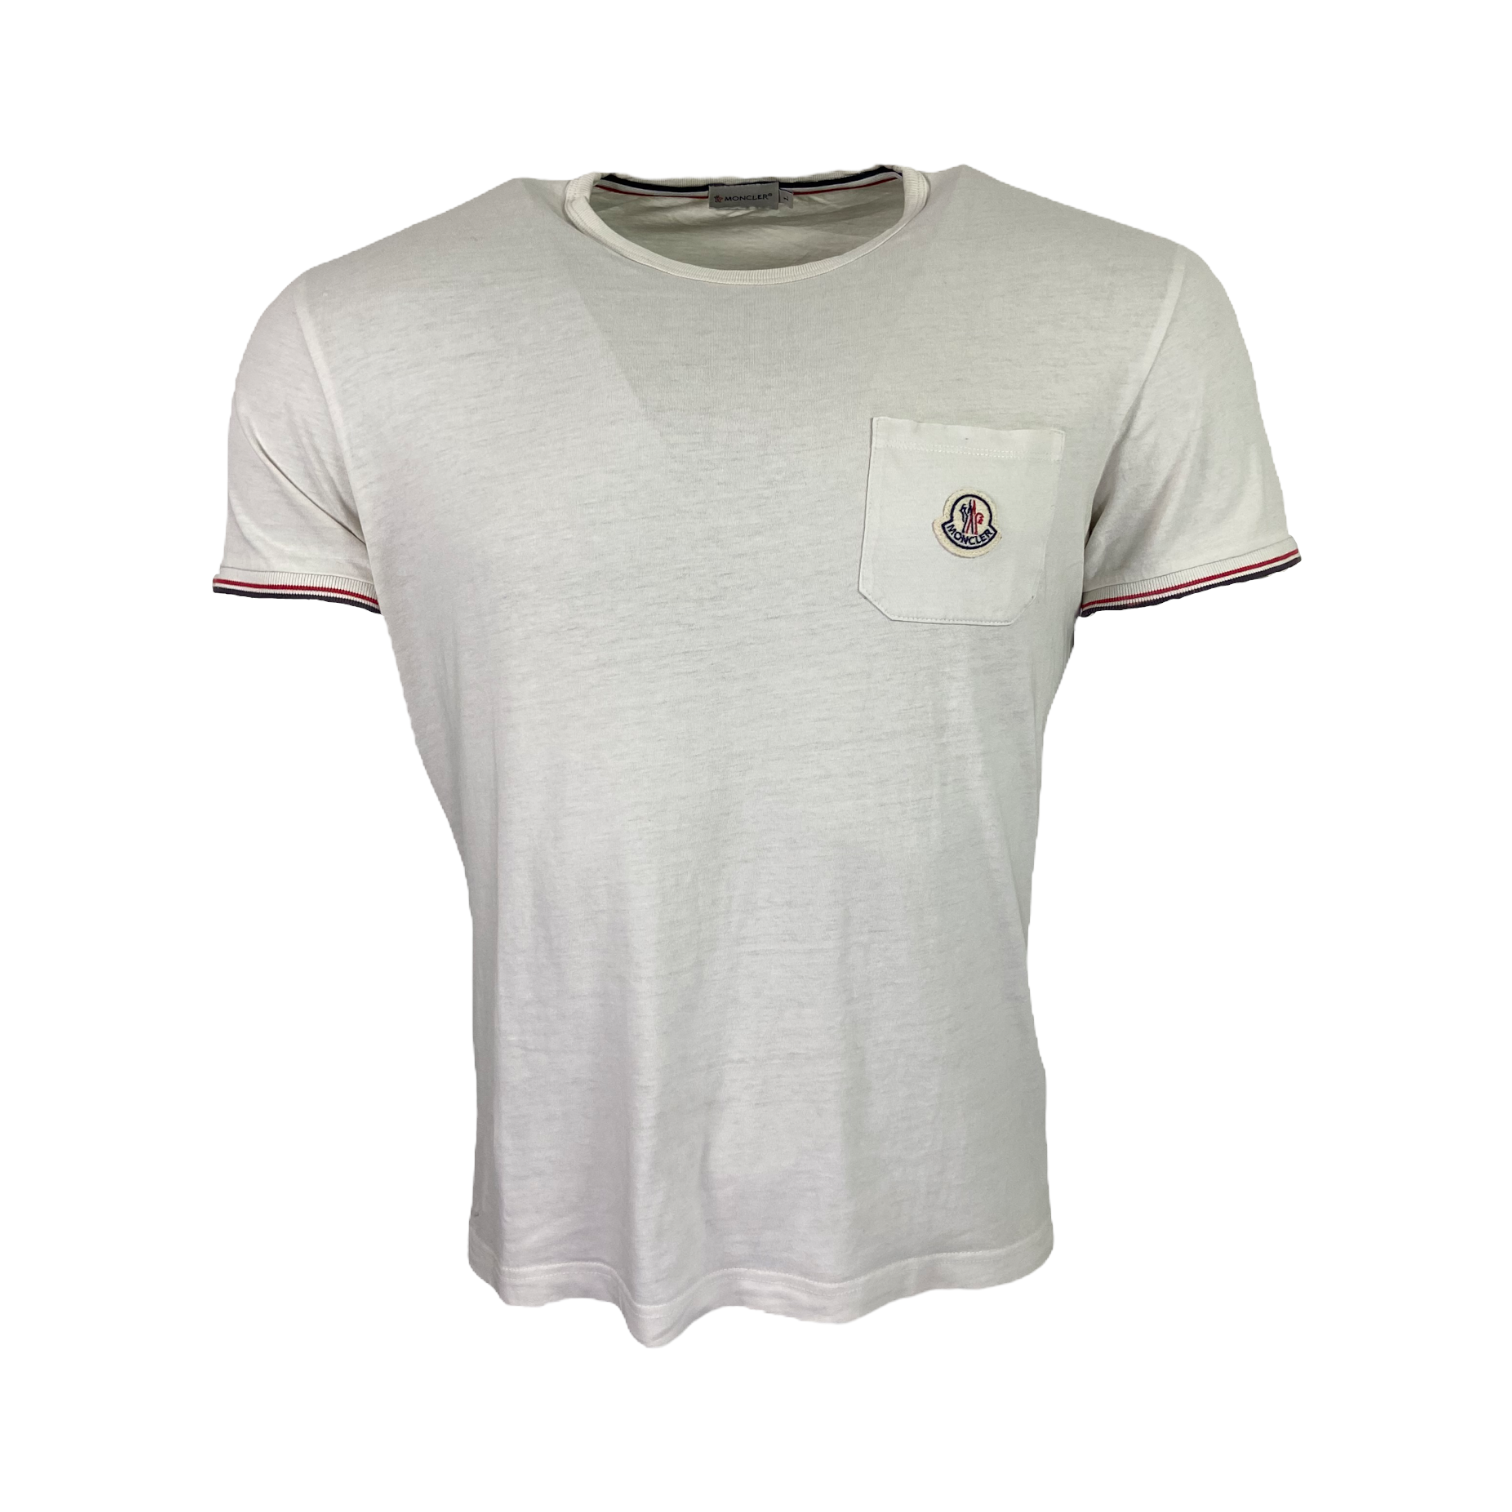 Moncler Logo T-Shirt - Size L (Fits S/M)